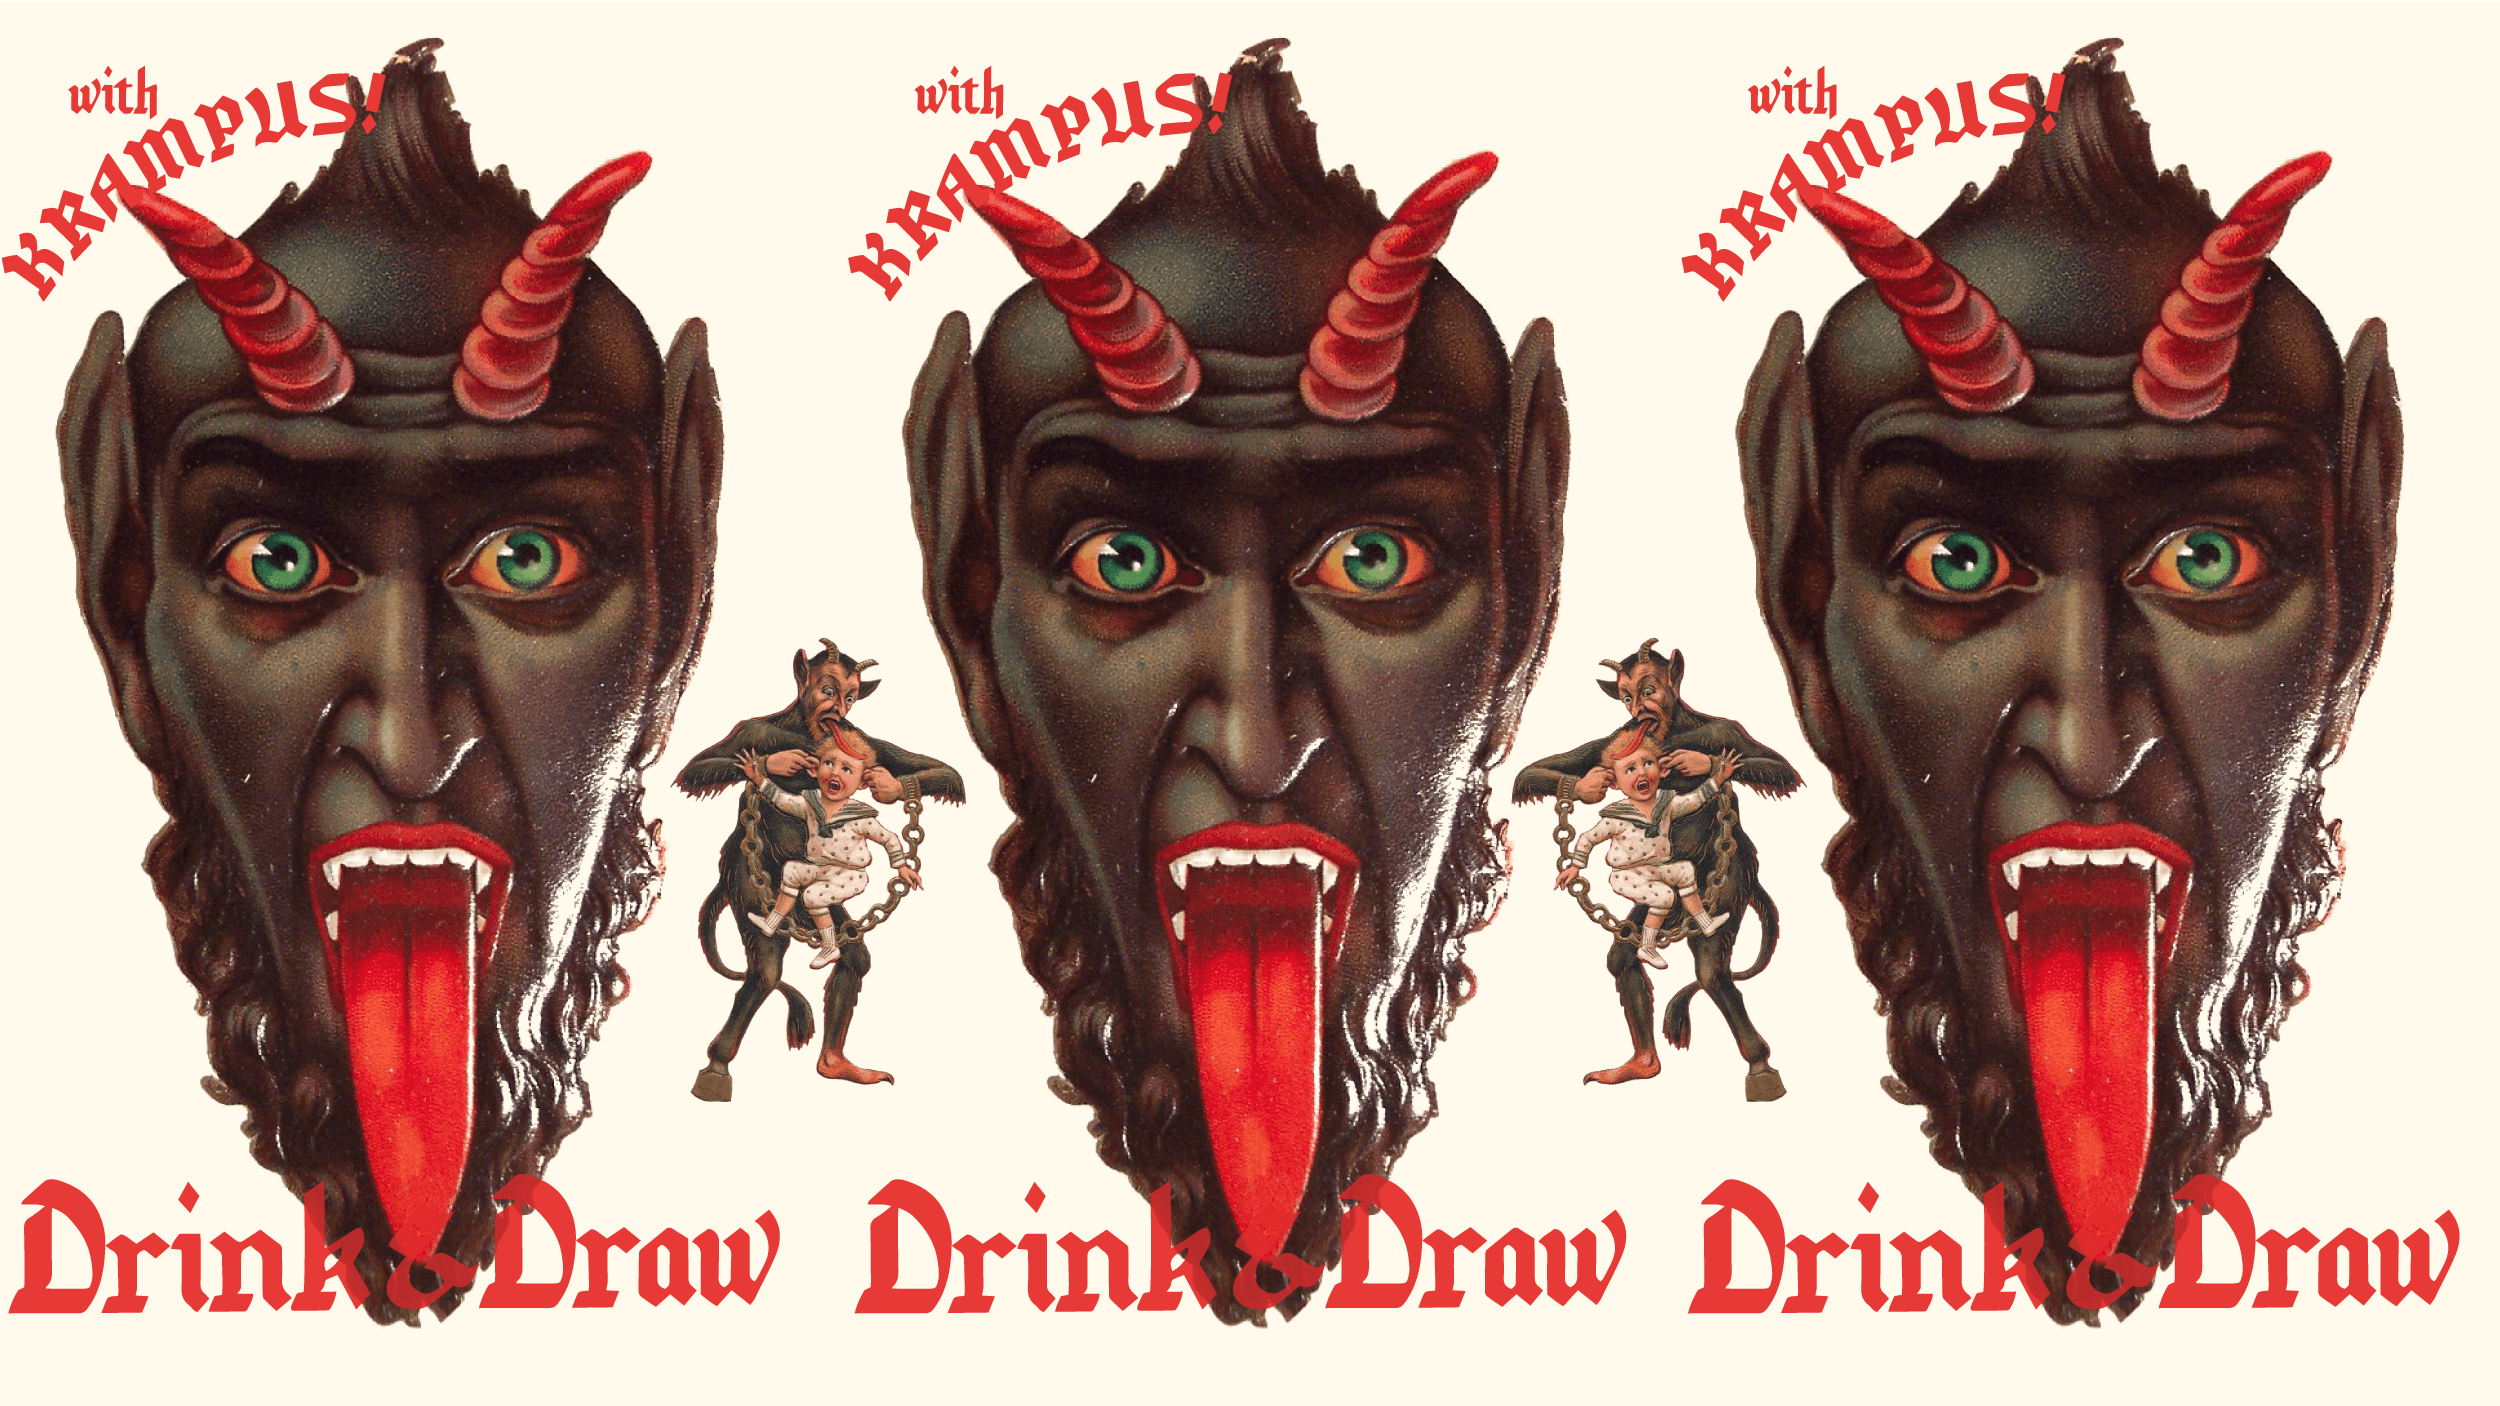 Drink & Draw with KRAMPUS